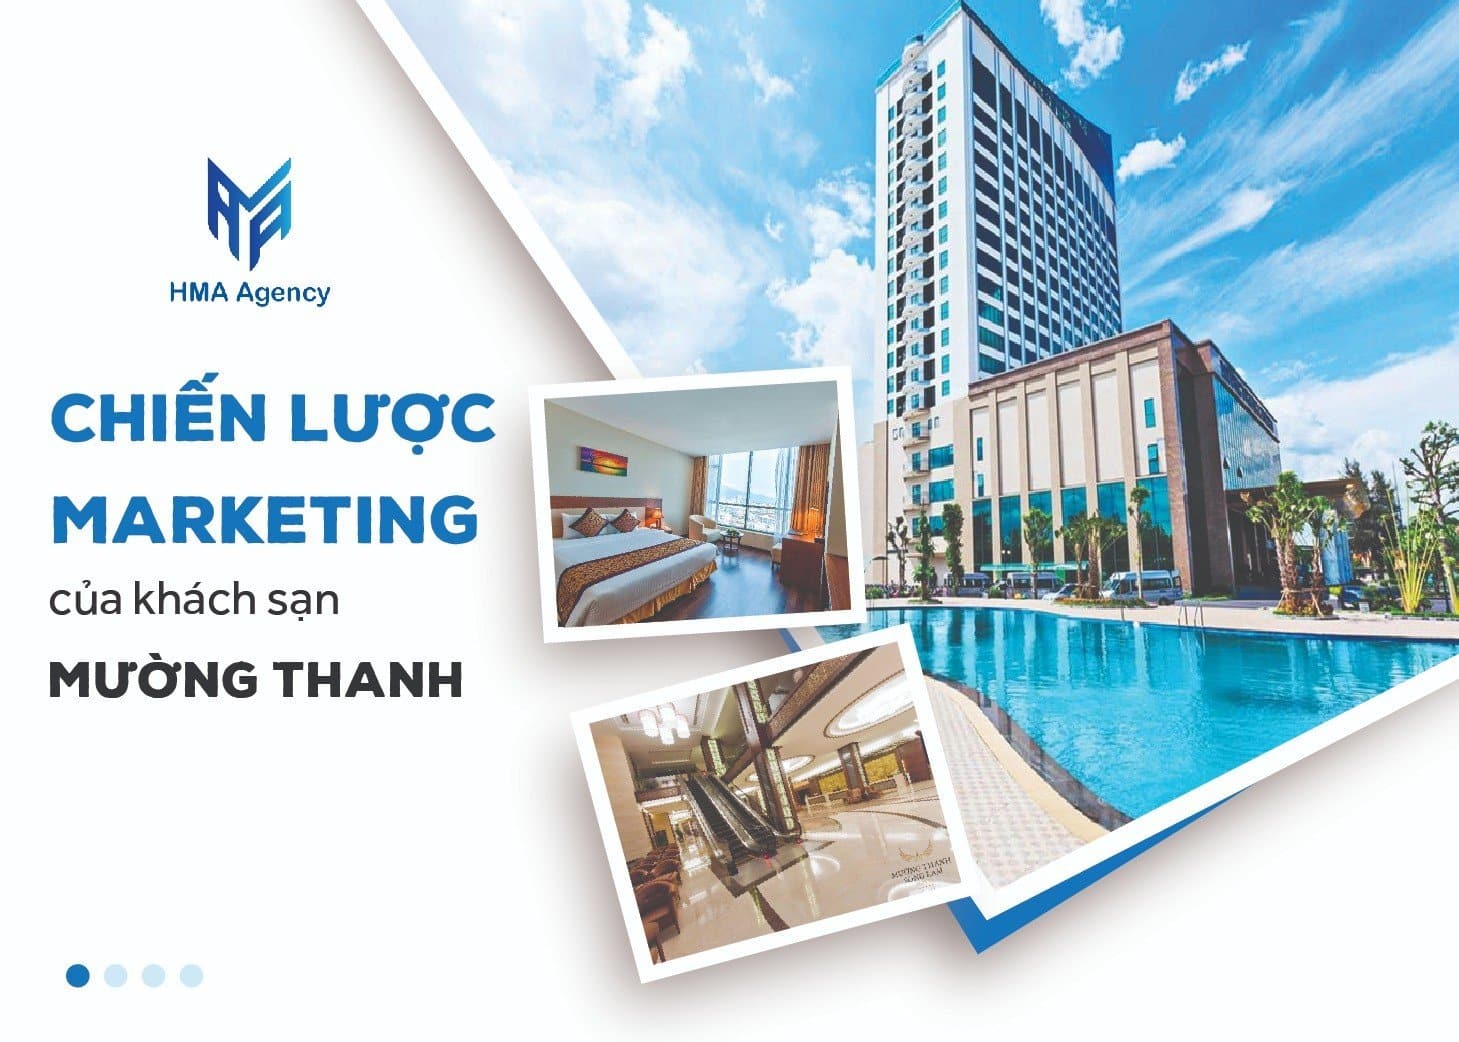 Chiến lược Marketing của khách sạn Mường Thanh